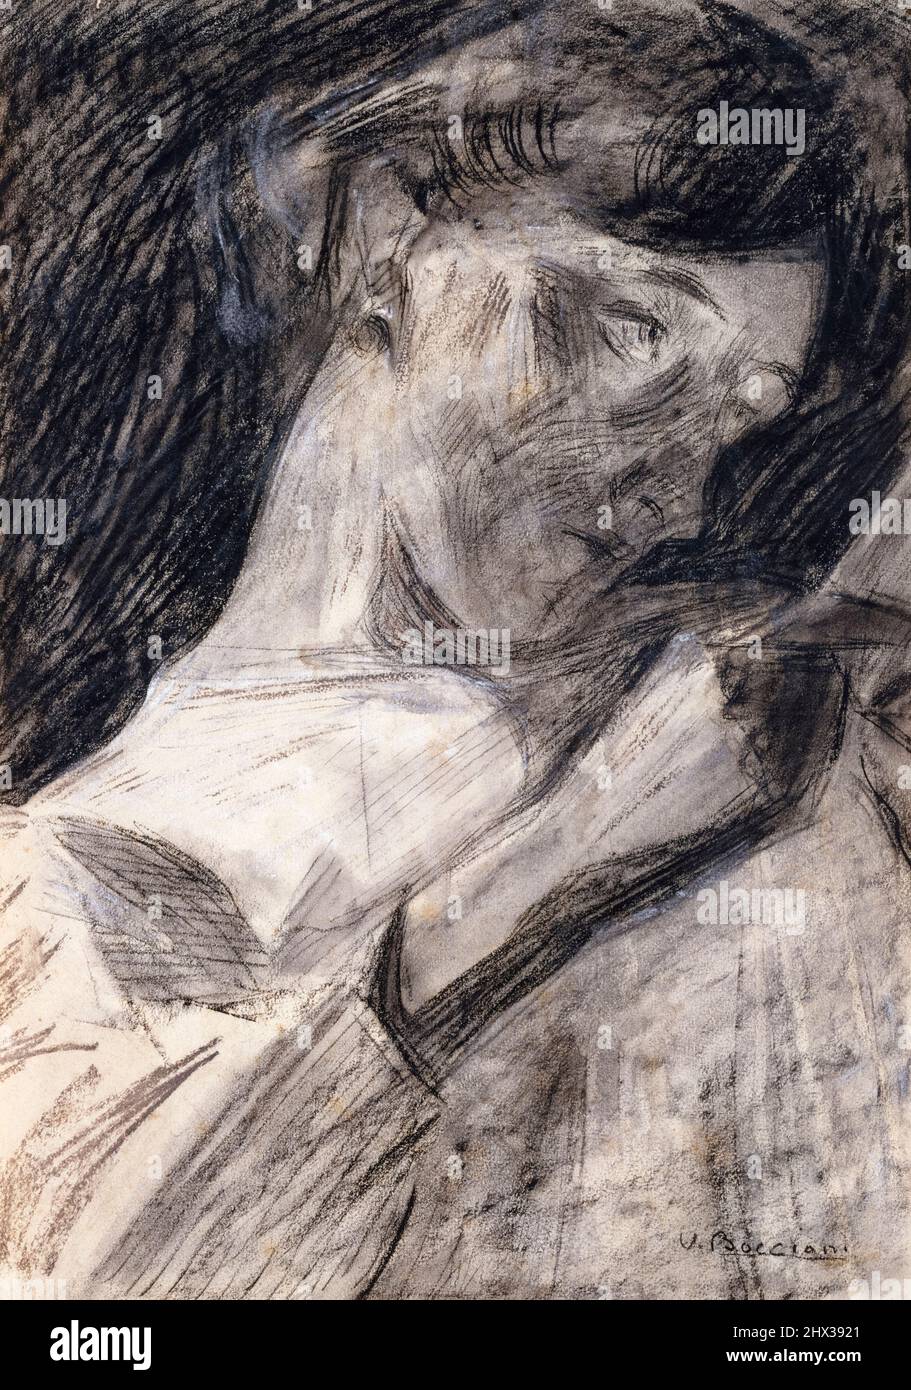 Umberto Boccioni, jeunes femmes lisant (Ines), dessin de portrait, charbon de bois, aquarelle et crayon de cire sur papier, 1909-1910 Banque D'Images